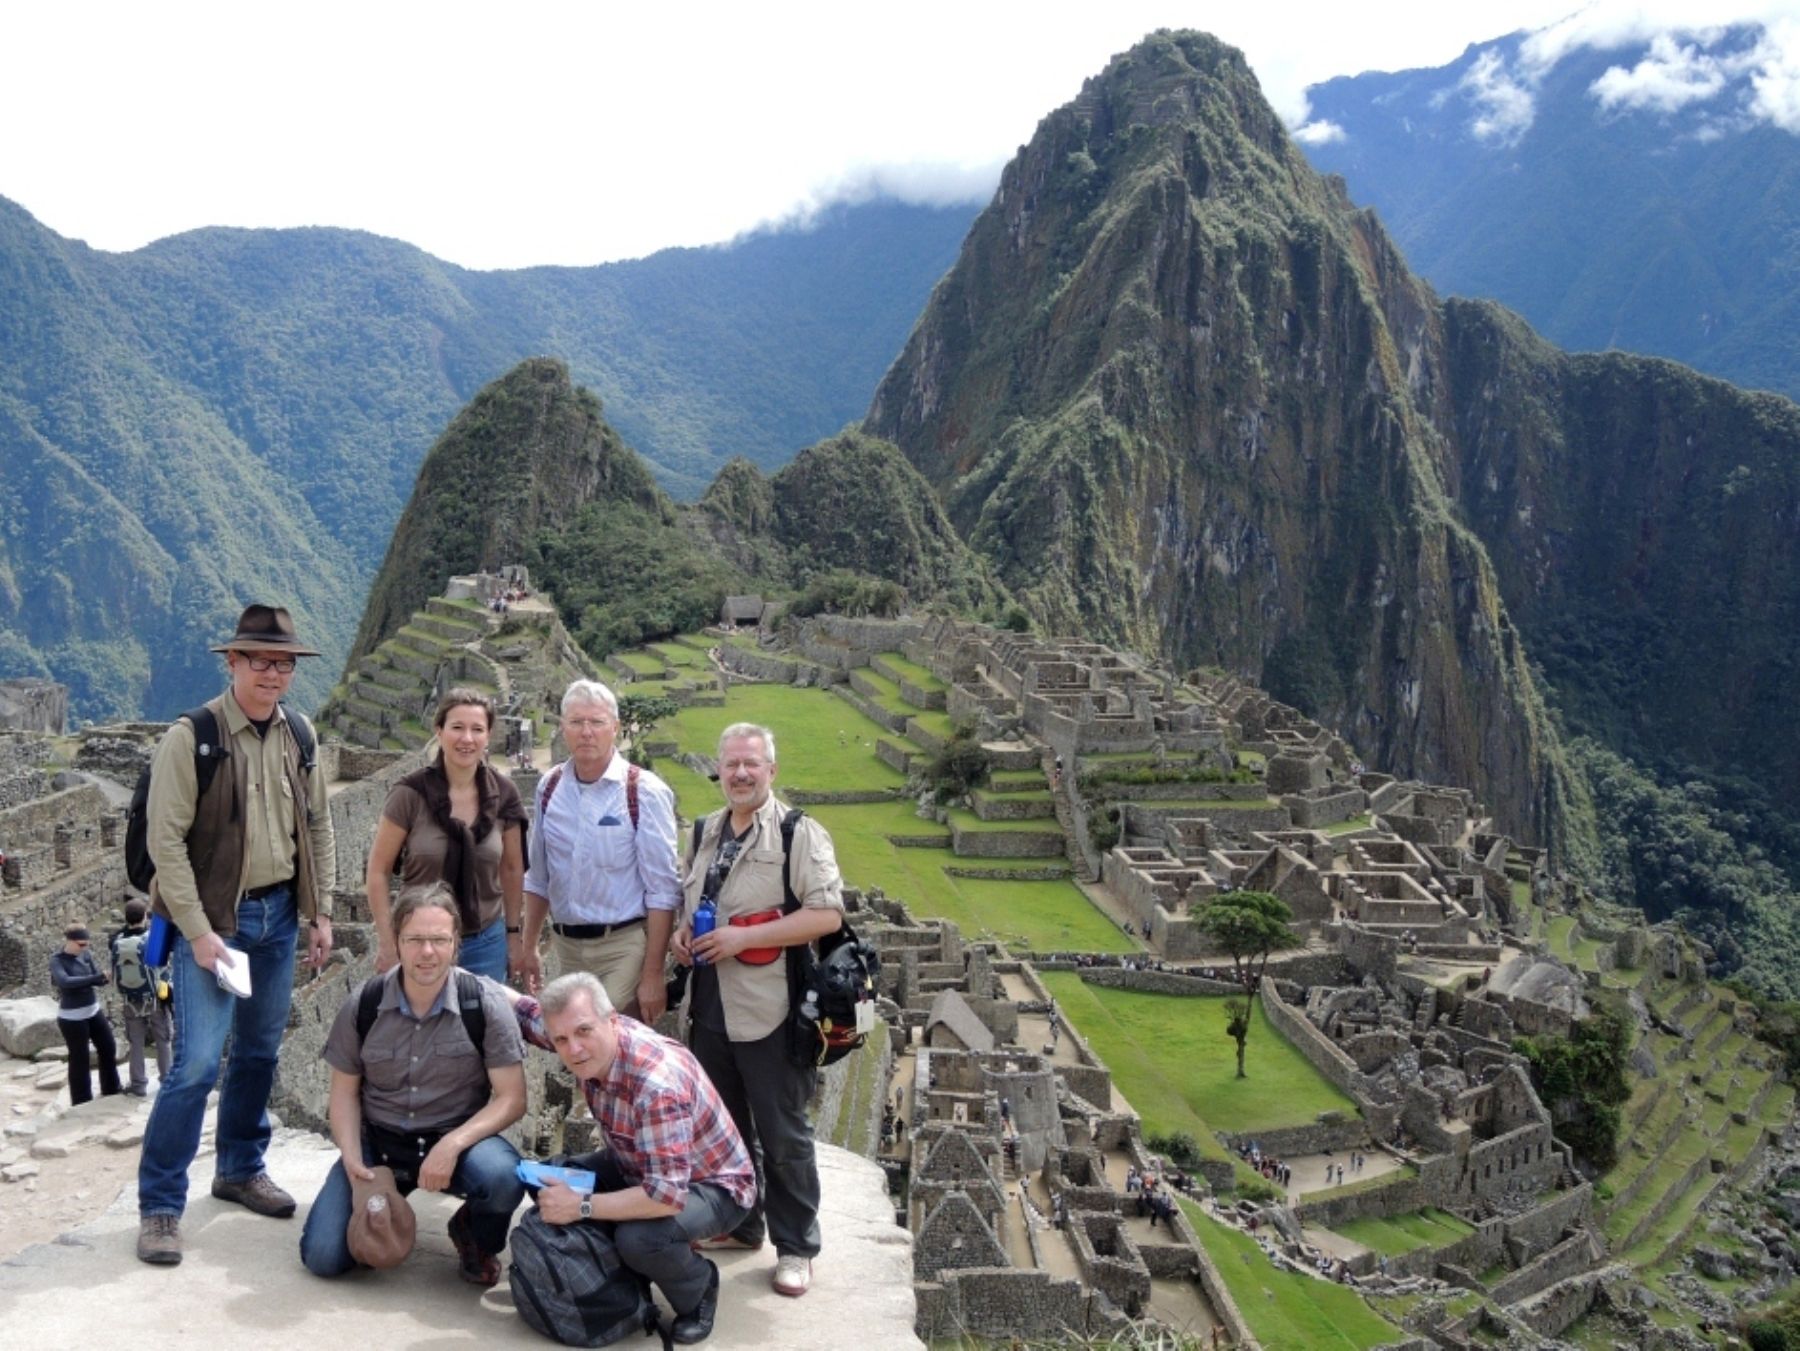 Overseas travelers at the Inca Citadel of Machu Picchu, located in Peru